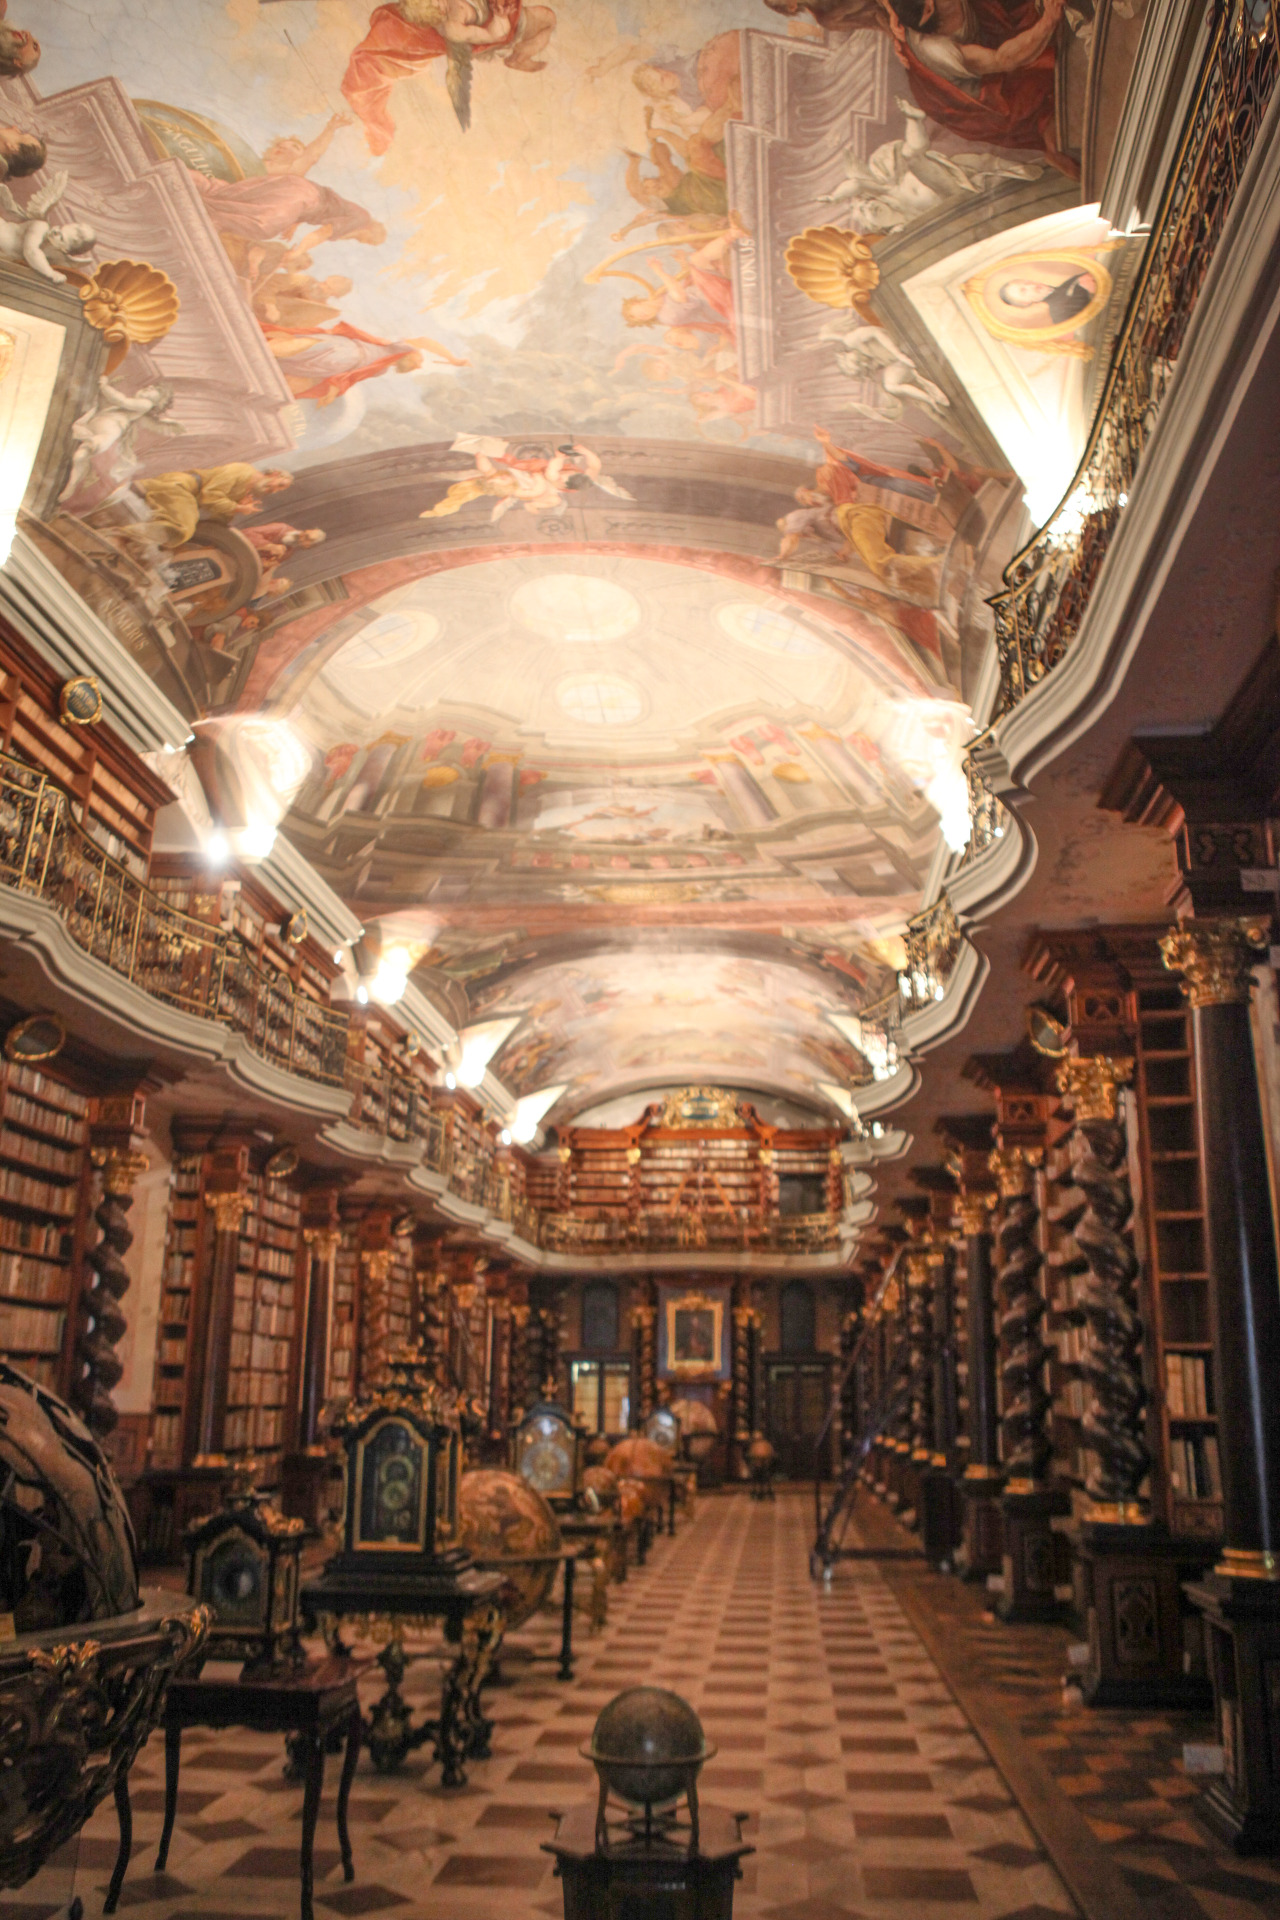 체코 국립도서관은 사진 촬영을 5분만 허용한다. 일정한 온도와 습도를 엄격하게 유지하고 있어서 이곳 내부로 들어가는 것은 허용되지 않는다.